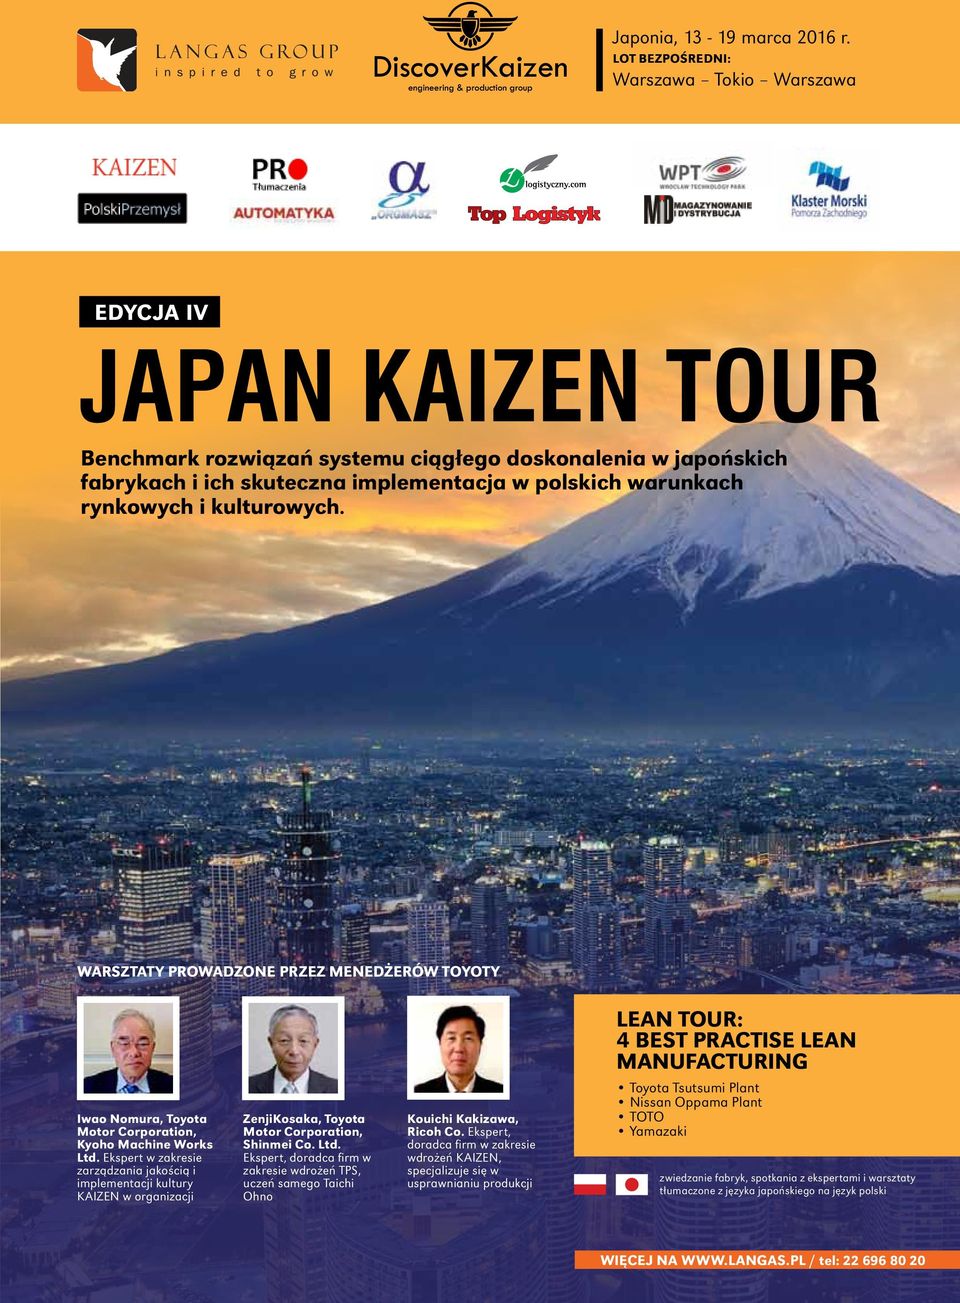 Ekspert w zakresie zarządzania jakością i implementacji kultury KAIZEN w organizacji ZenjiKosaka, Toyota Motor Corporation, Shinmei Co. Ltd.